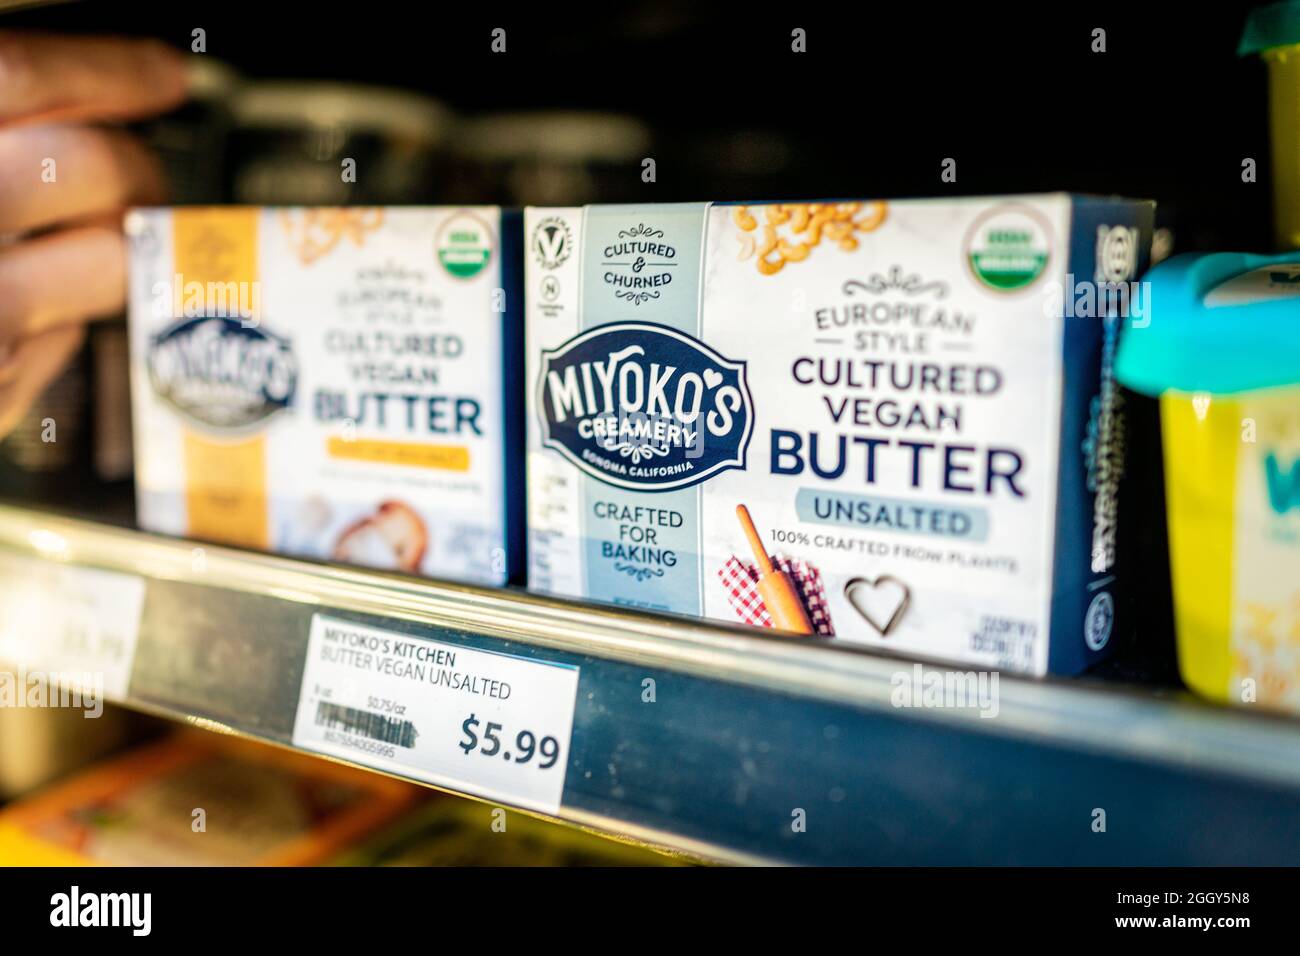 Herndon, USA - 25. März 2021: Nahaufnahme von veganen Lebensmitteln, verpackt in Miyoko's ungesalzener Butter aus europäischer Kultur, verteilt auf Supermarke im Lebensmittelgeschäft Stockfoto